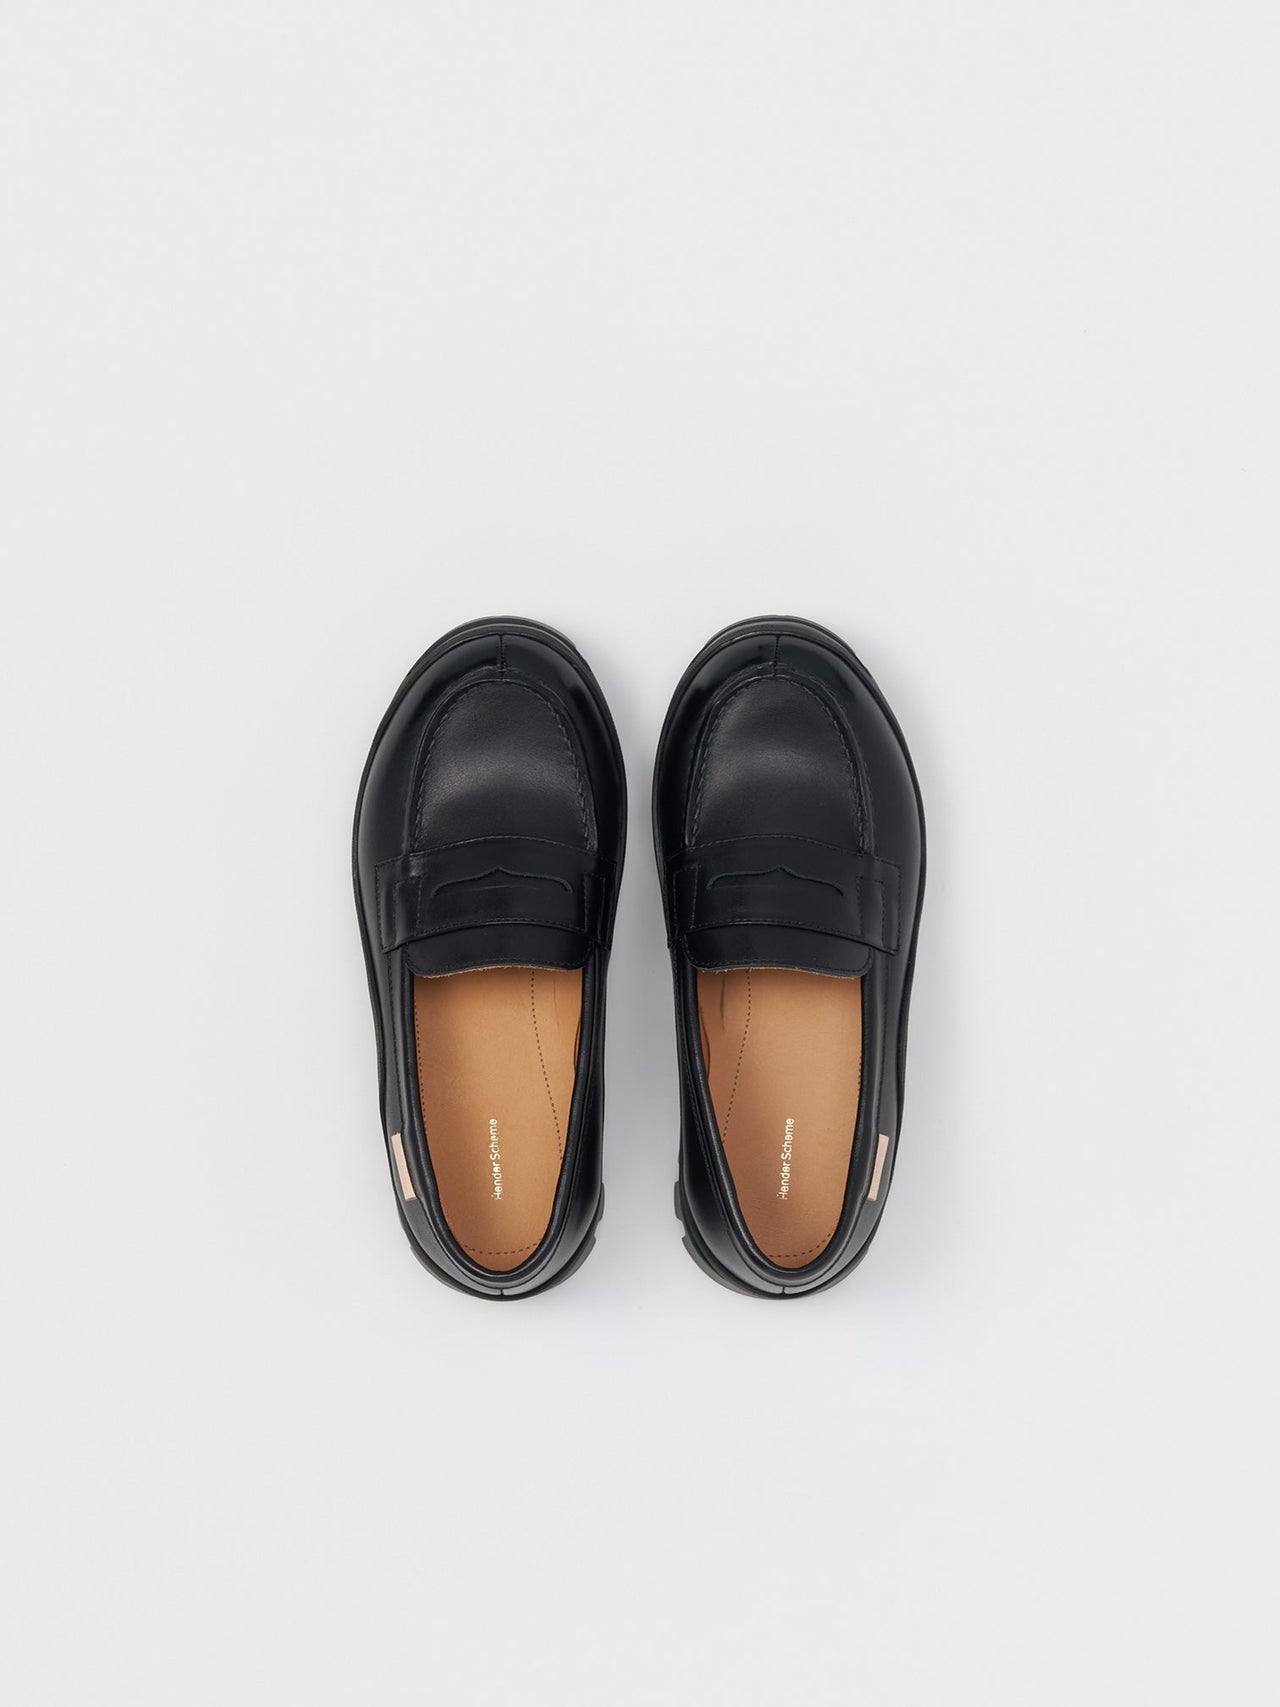 Hender Scheme / loafer (BLACK)